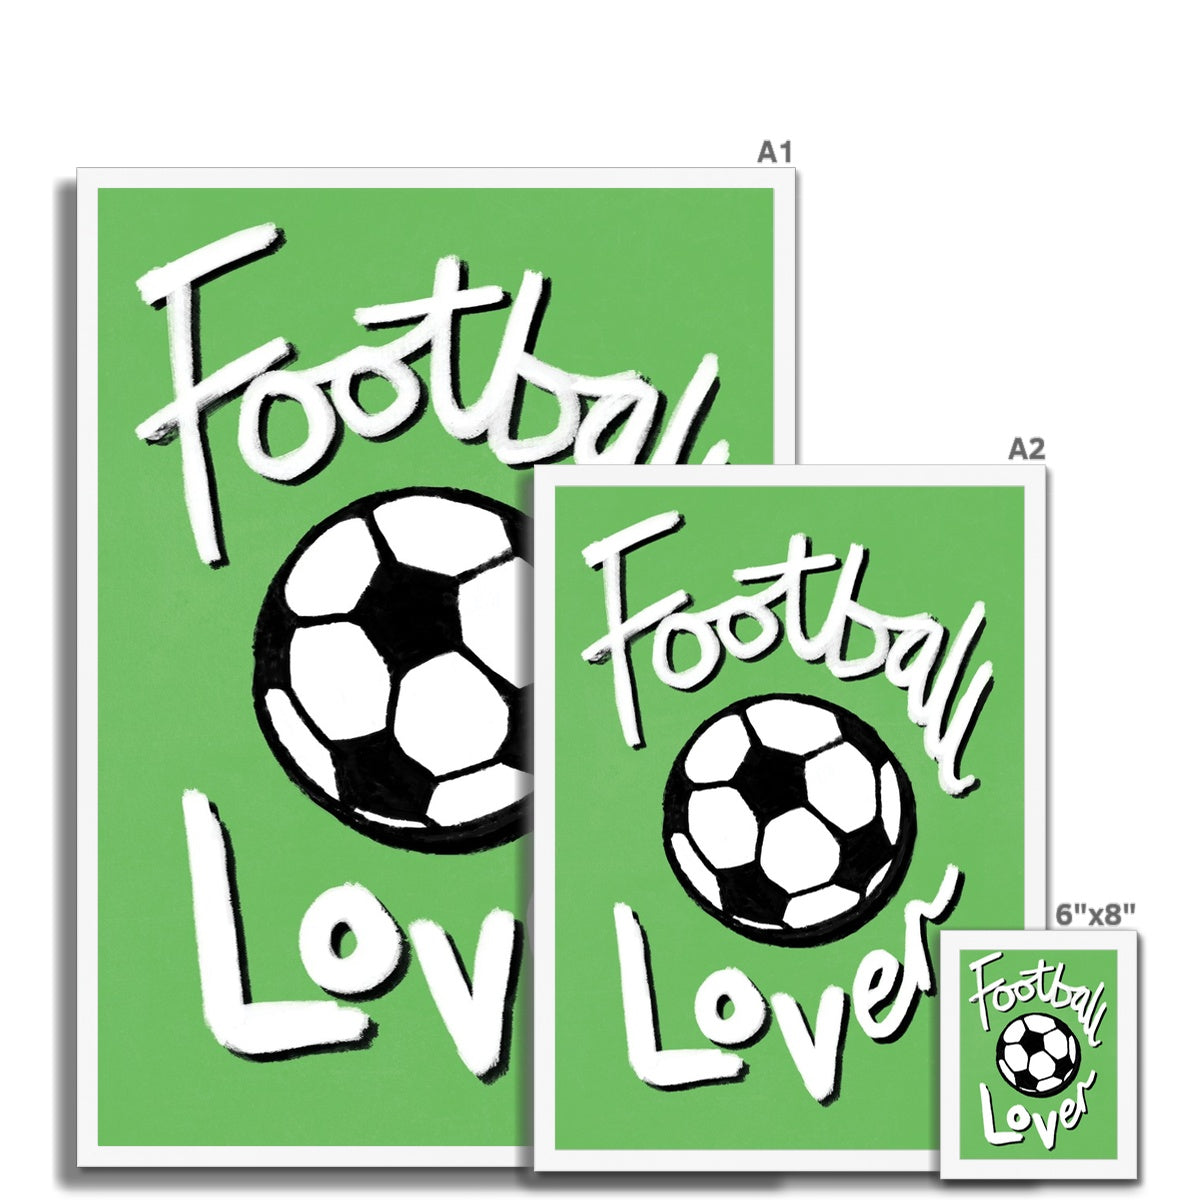 Football Lover Print - Green, White, Black Framed Print